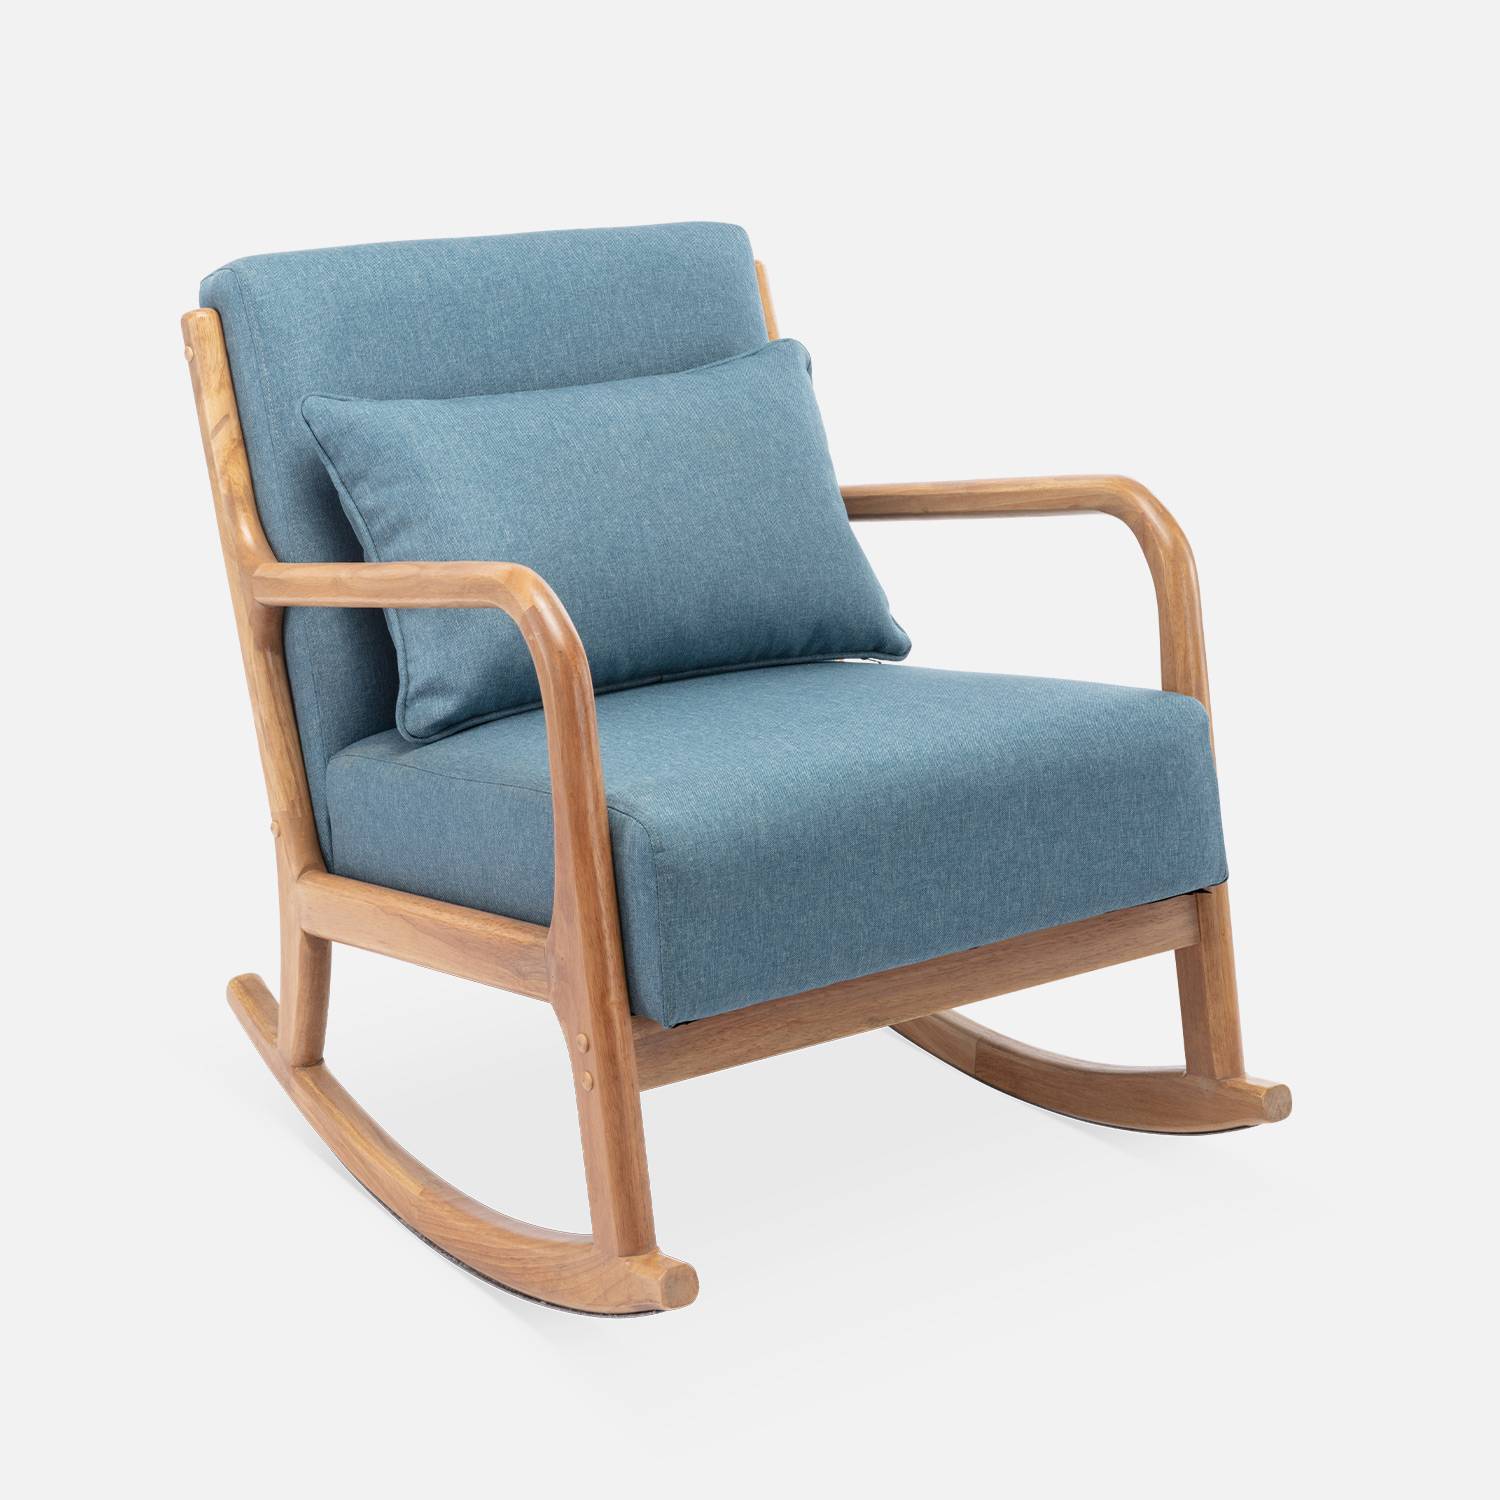 Cadeira de baloiço de design em madeira e tecido, 1 lugar, cadeira de baloiço escandinava, azul,sweeek,Photo3